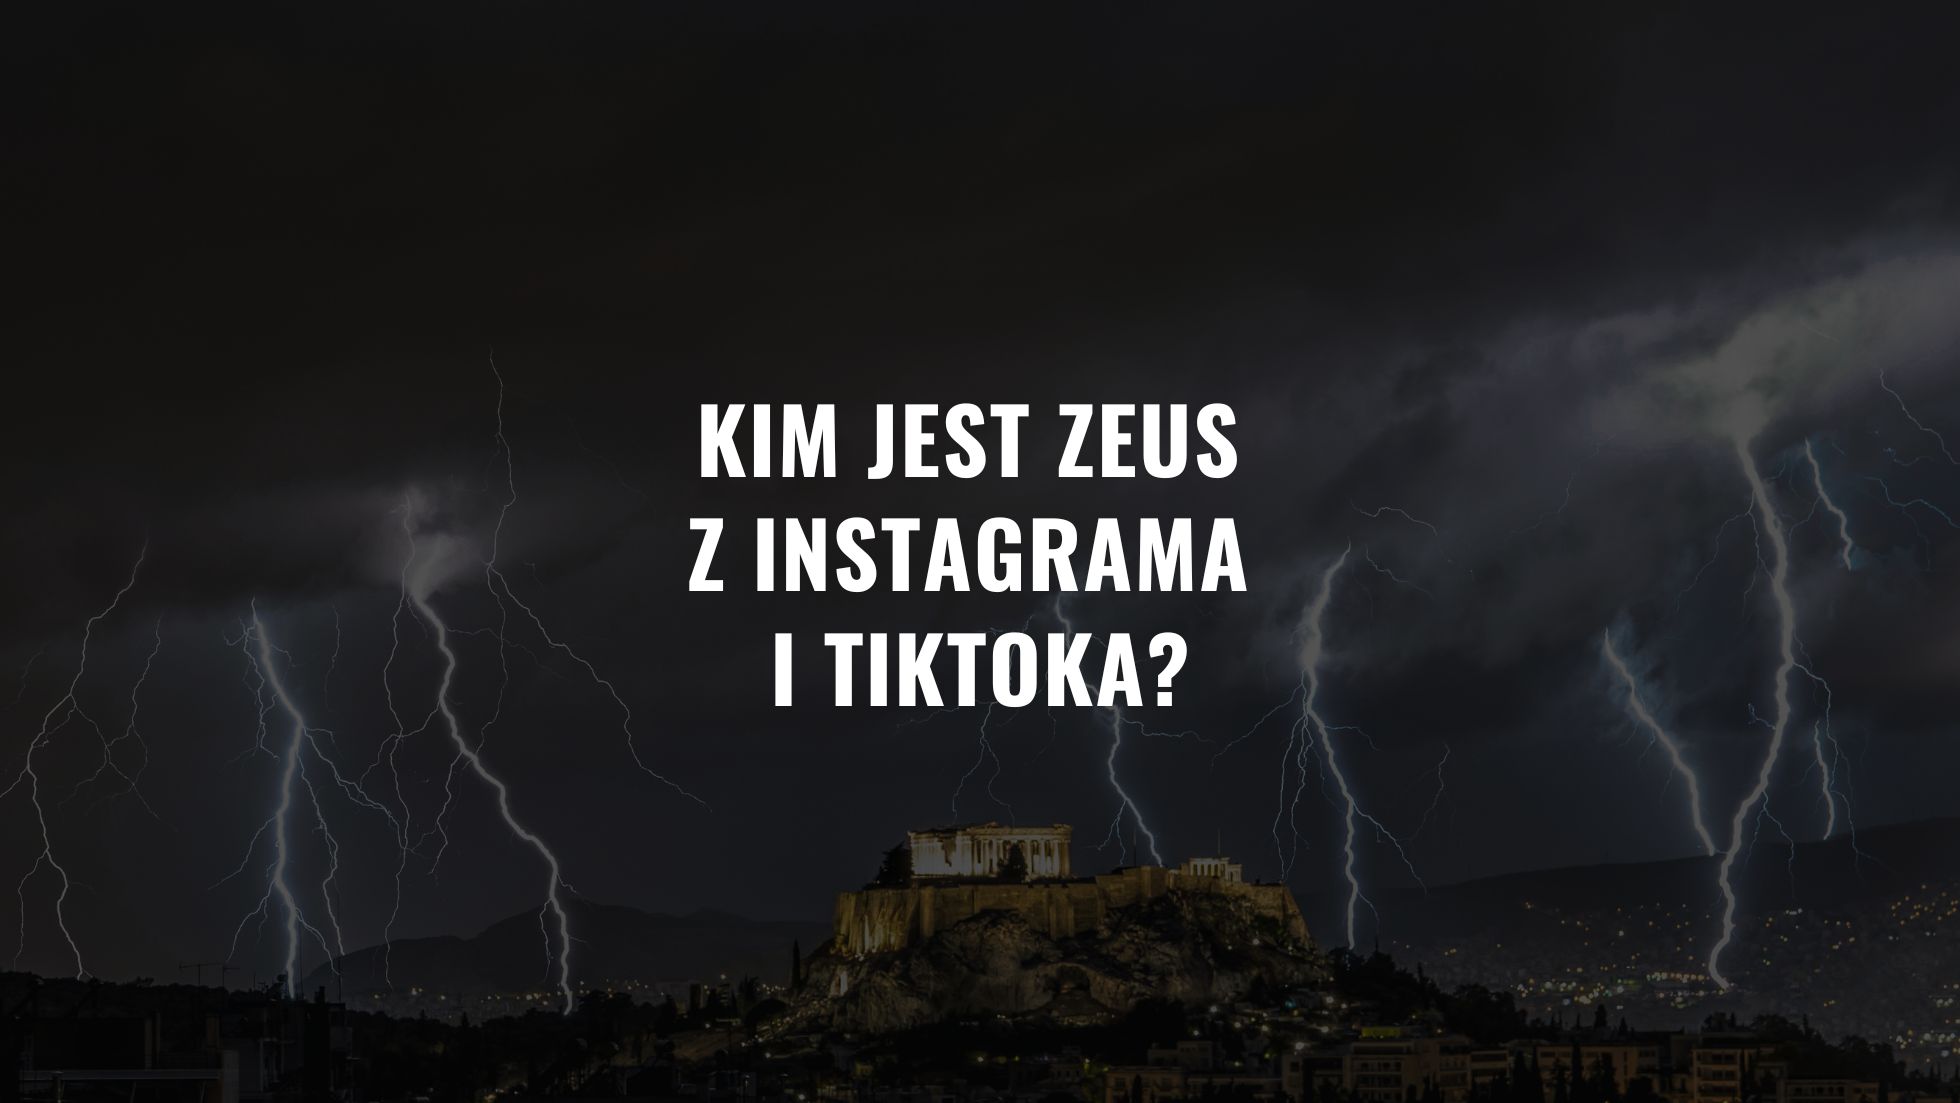 Kim jest Zeus z Instagrama i TikToka